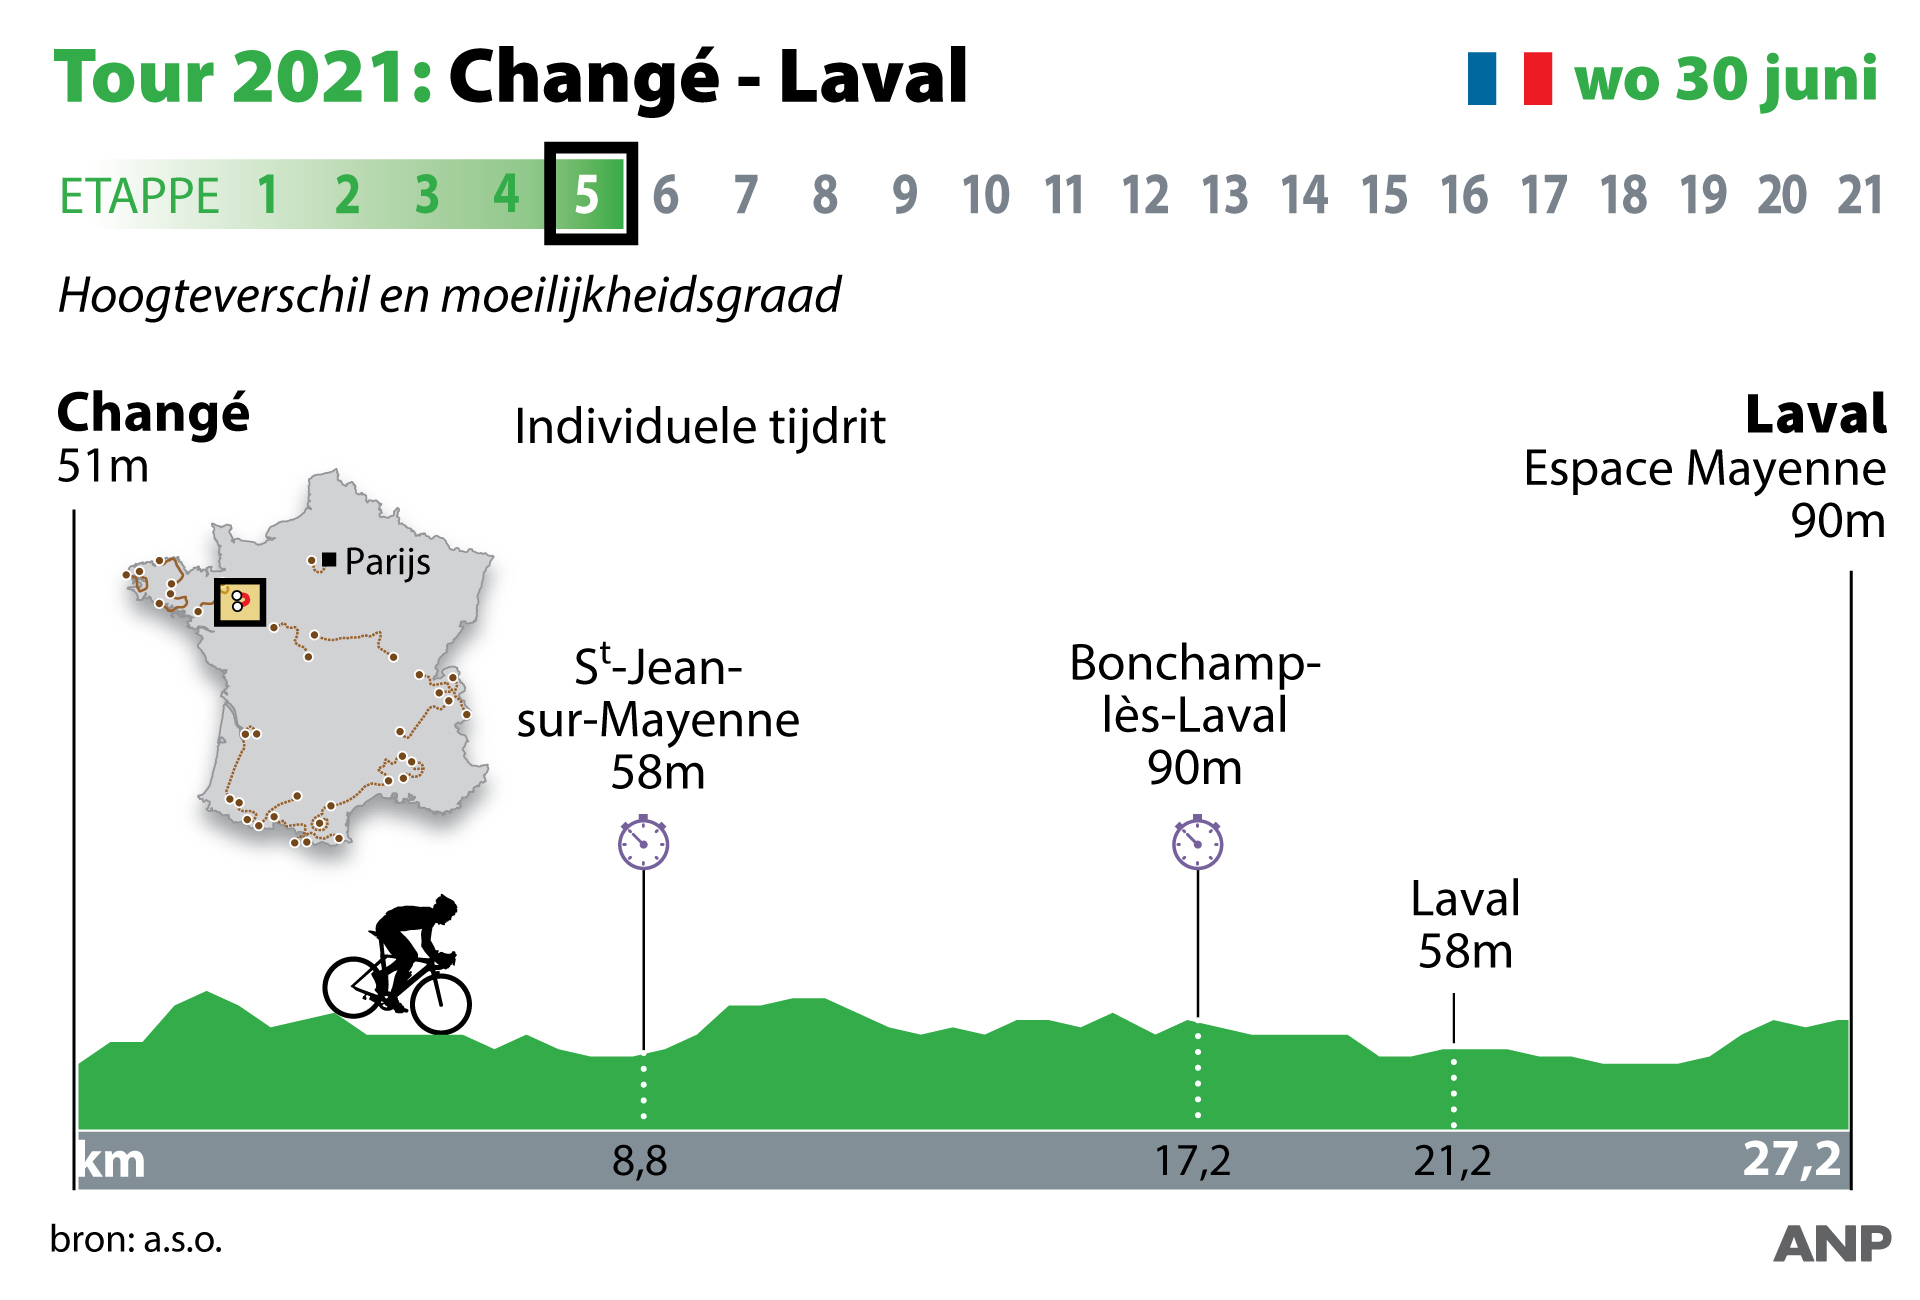 Live stream Tour de France etappe 5 (Changé - Laval)